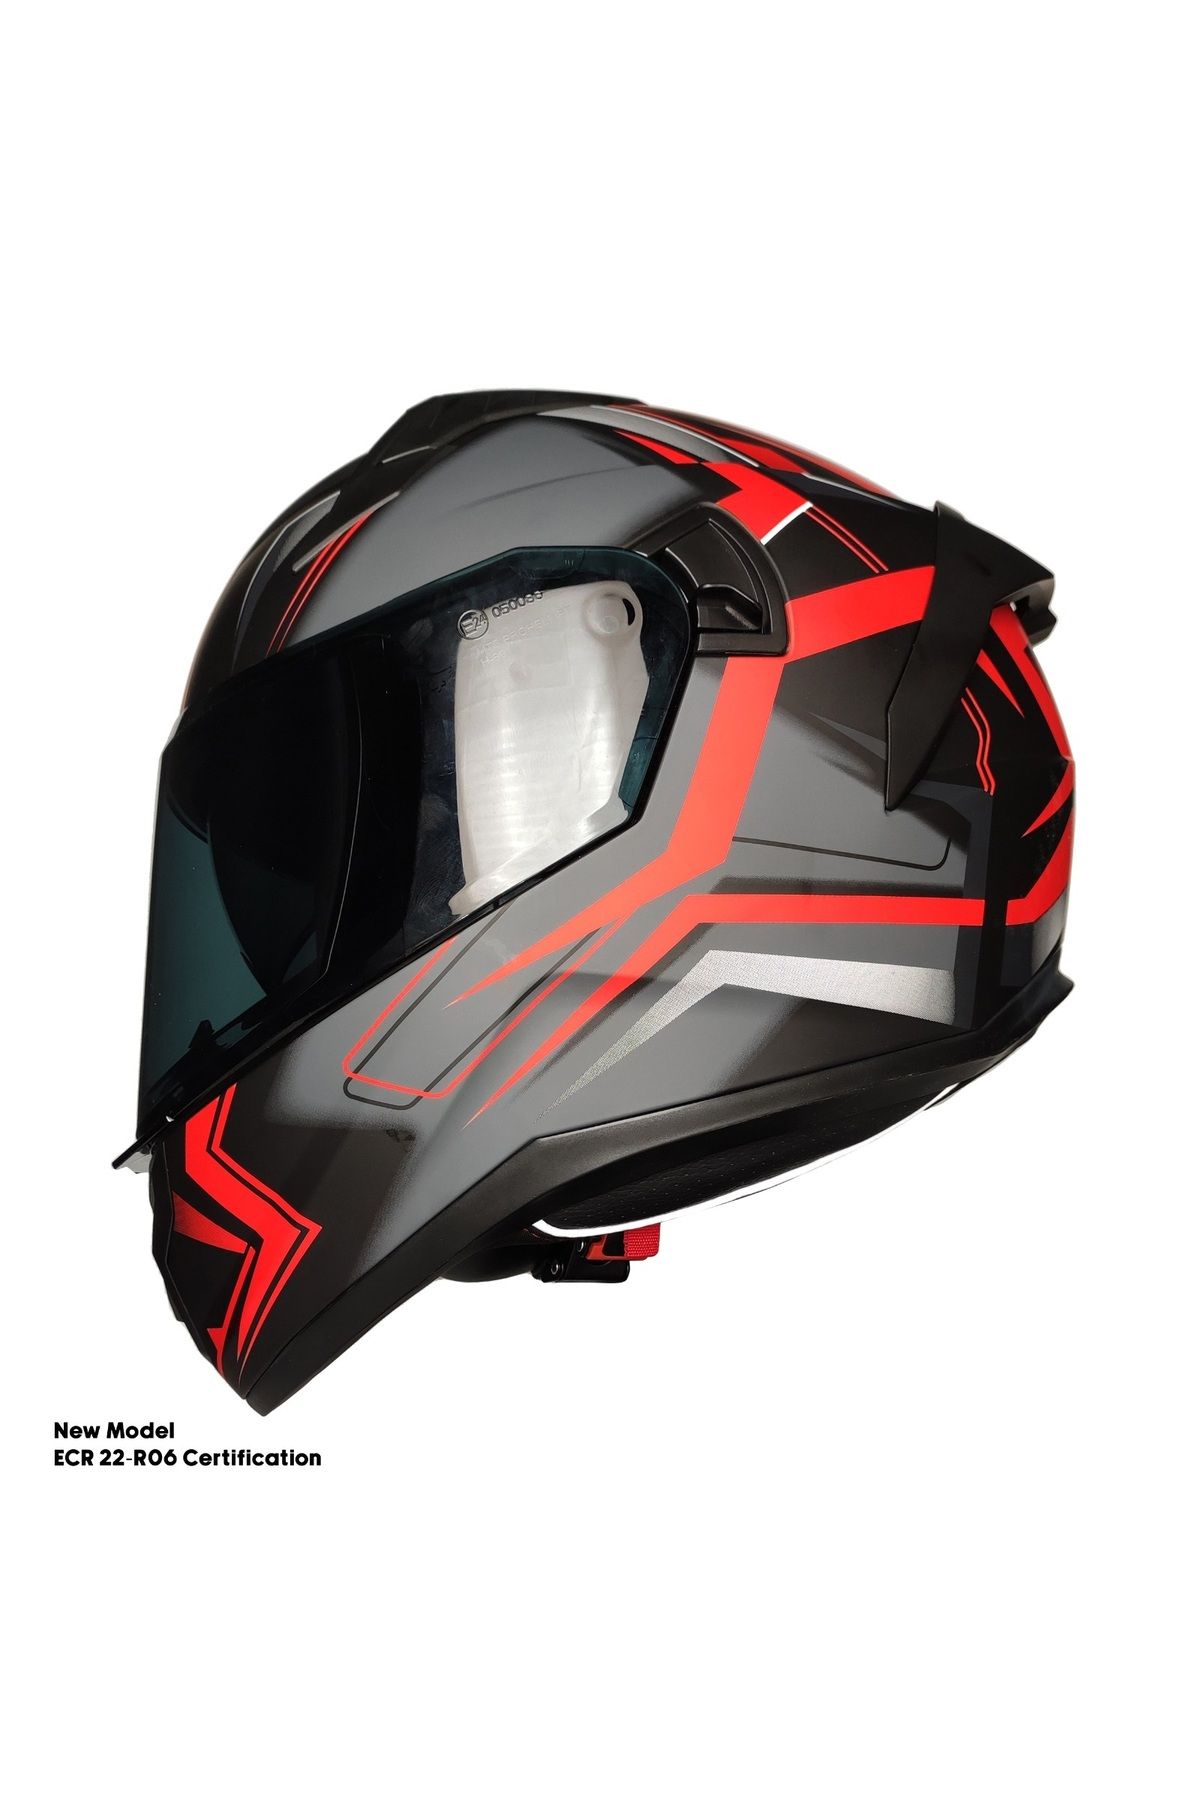 MOTOANL Motosiklet Kask Ece 22.R06 Sertifikalı Double Vizör Fiber Motor Kaskı Full Face Yeni Sezon TWILIGHT